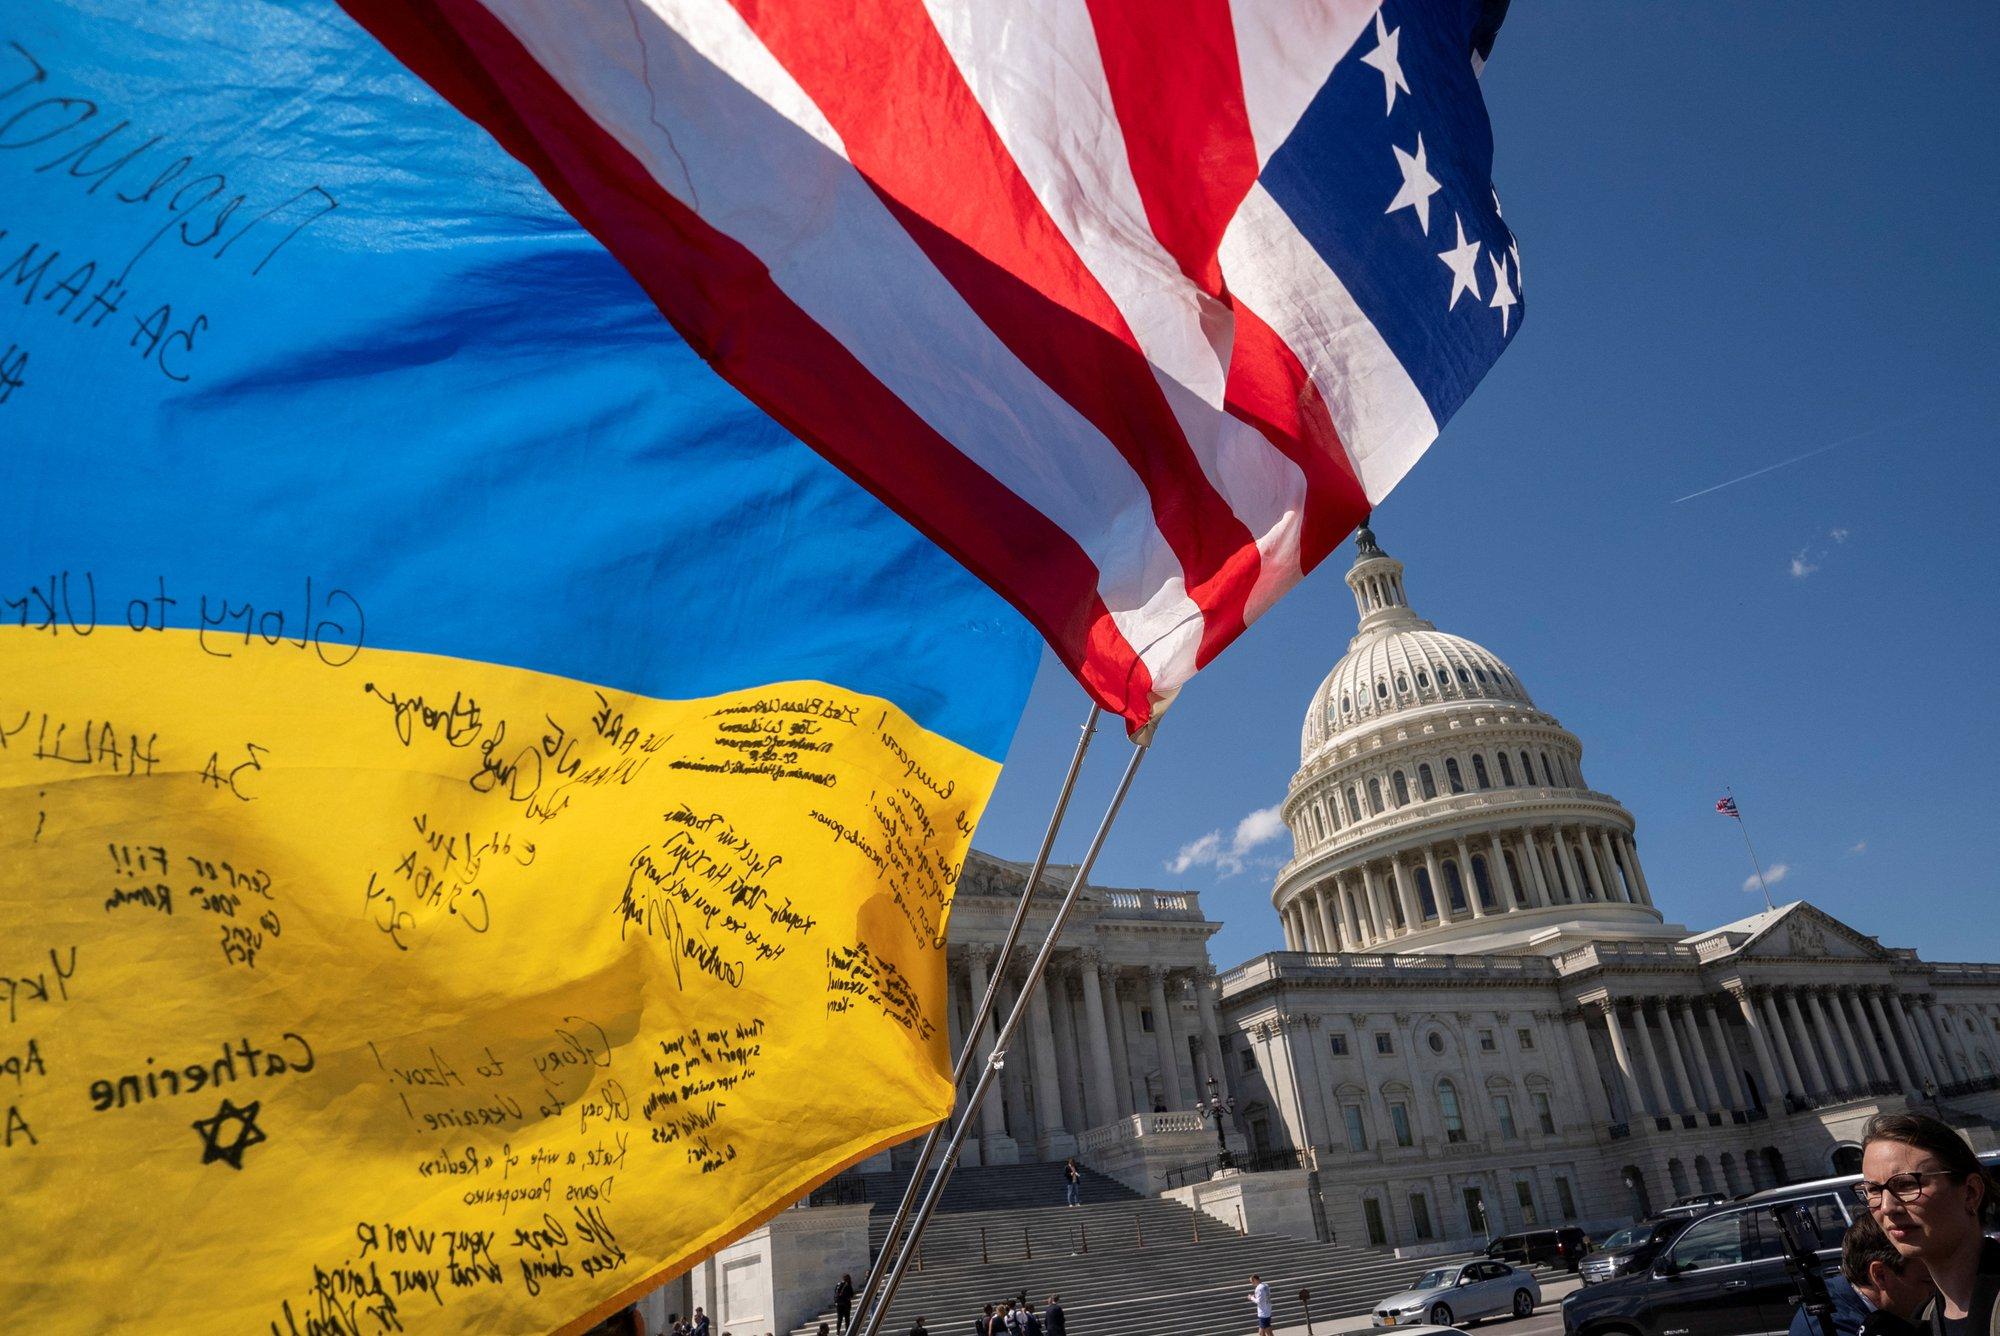 Удар для Путина и Трампа. Выделение помощи Украине подрывает позиции сторонников России в США